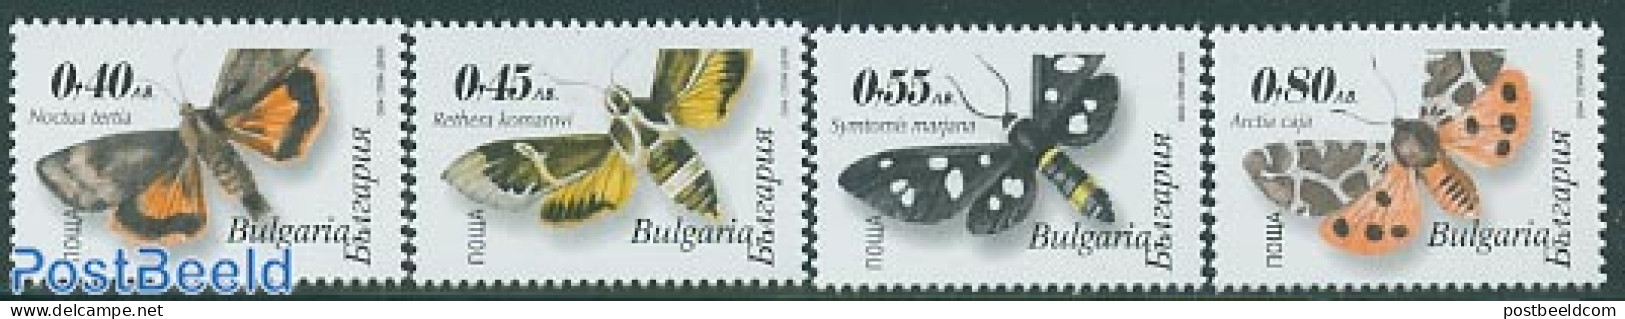 Bulgaria 2004 Butterflies 4v, Normal Perforation, Mint NH, Nature - Butterflies - Neufs